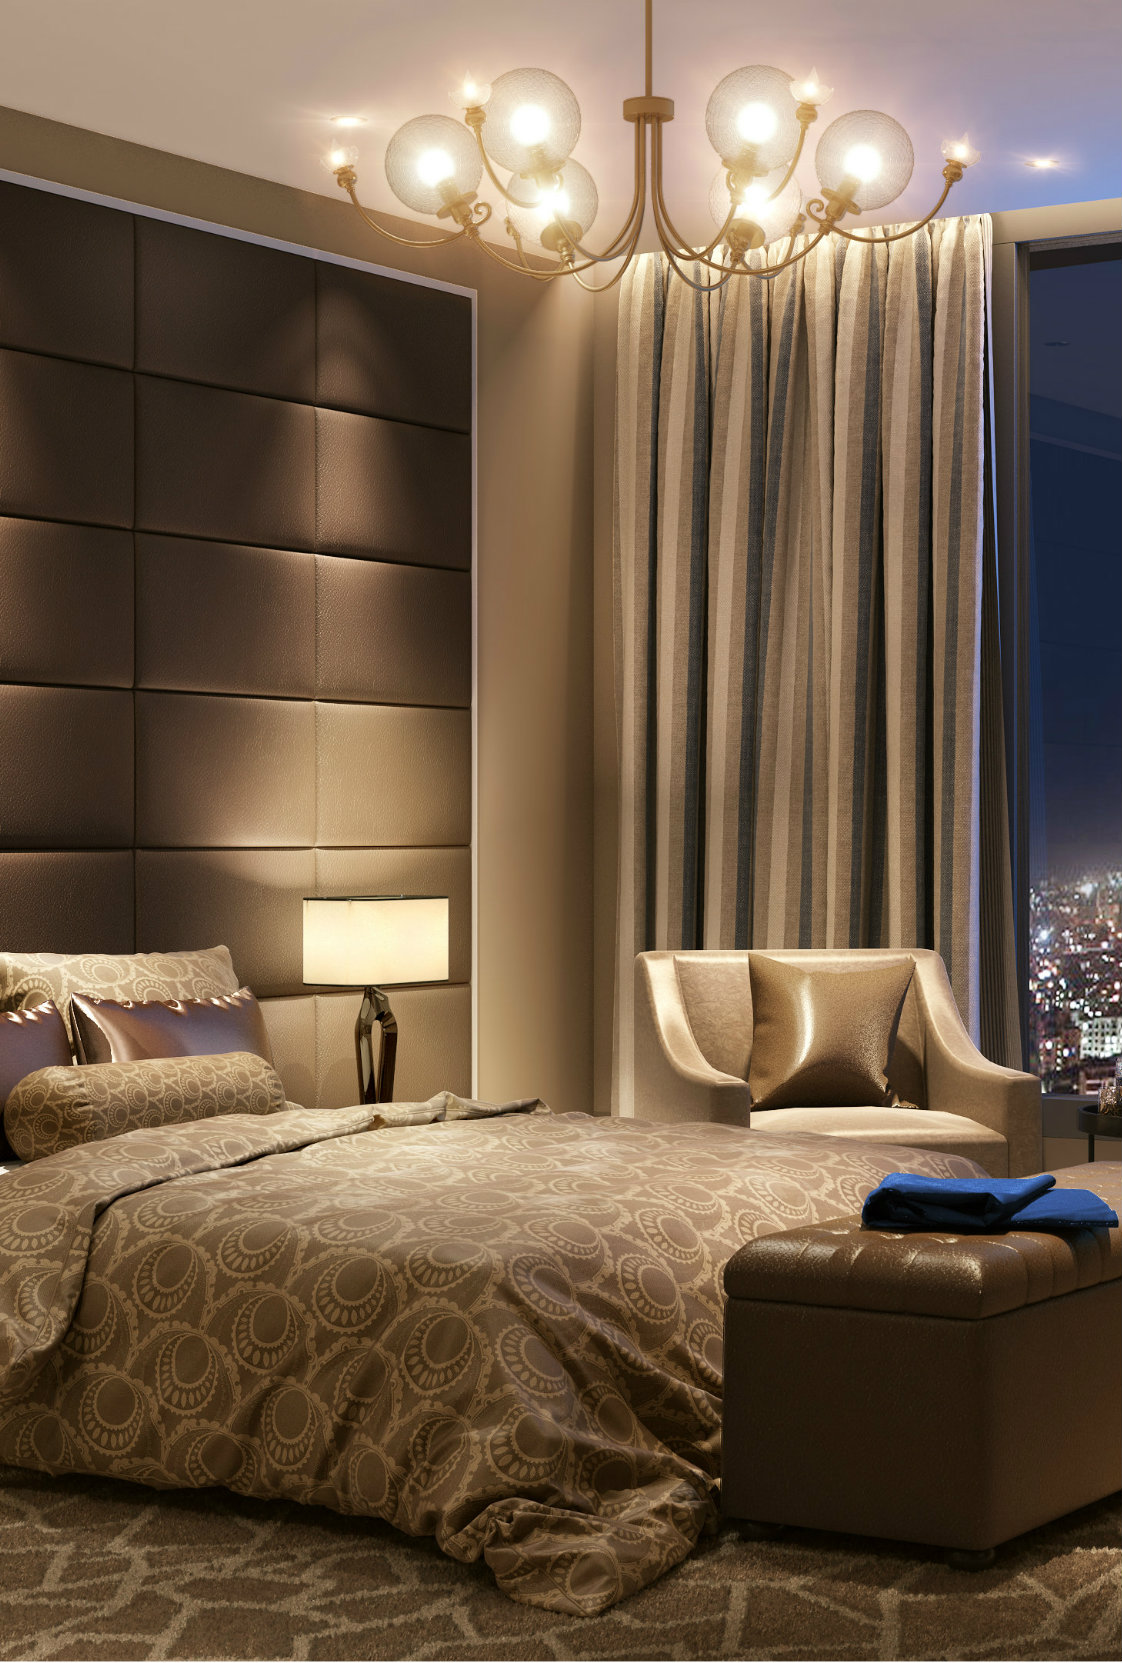 8 Stylish Hotel Bedroom Ideas To Keep An Eye